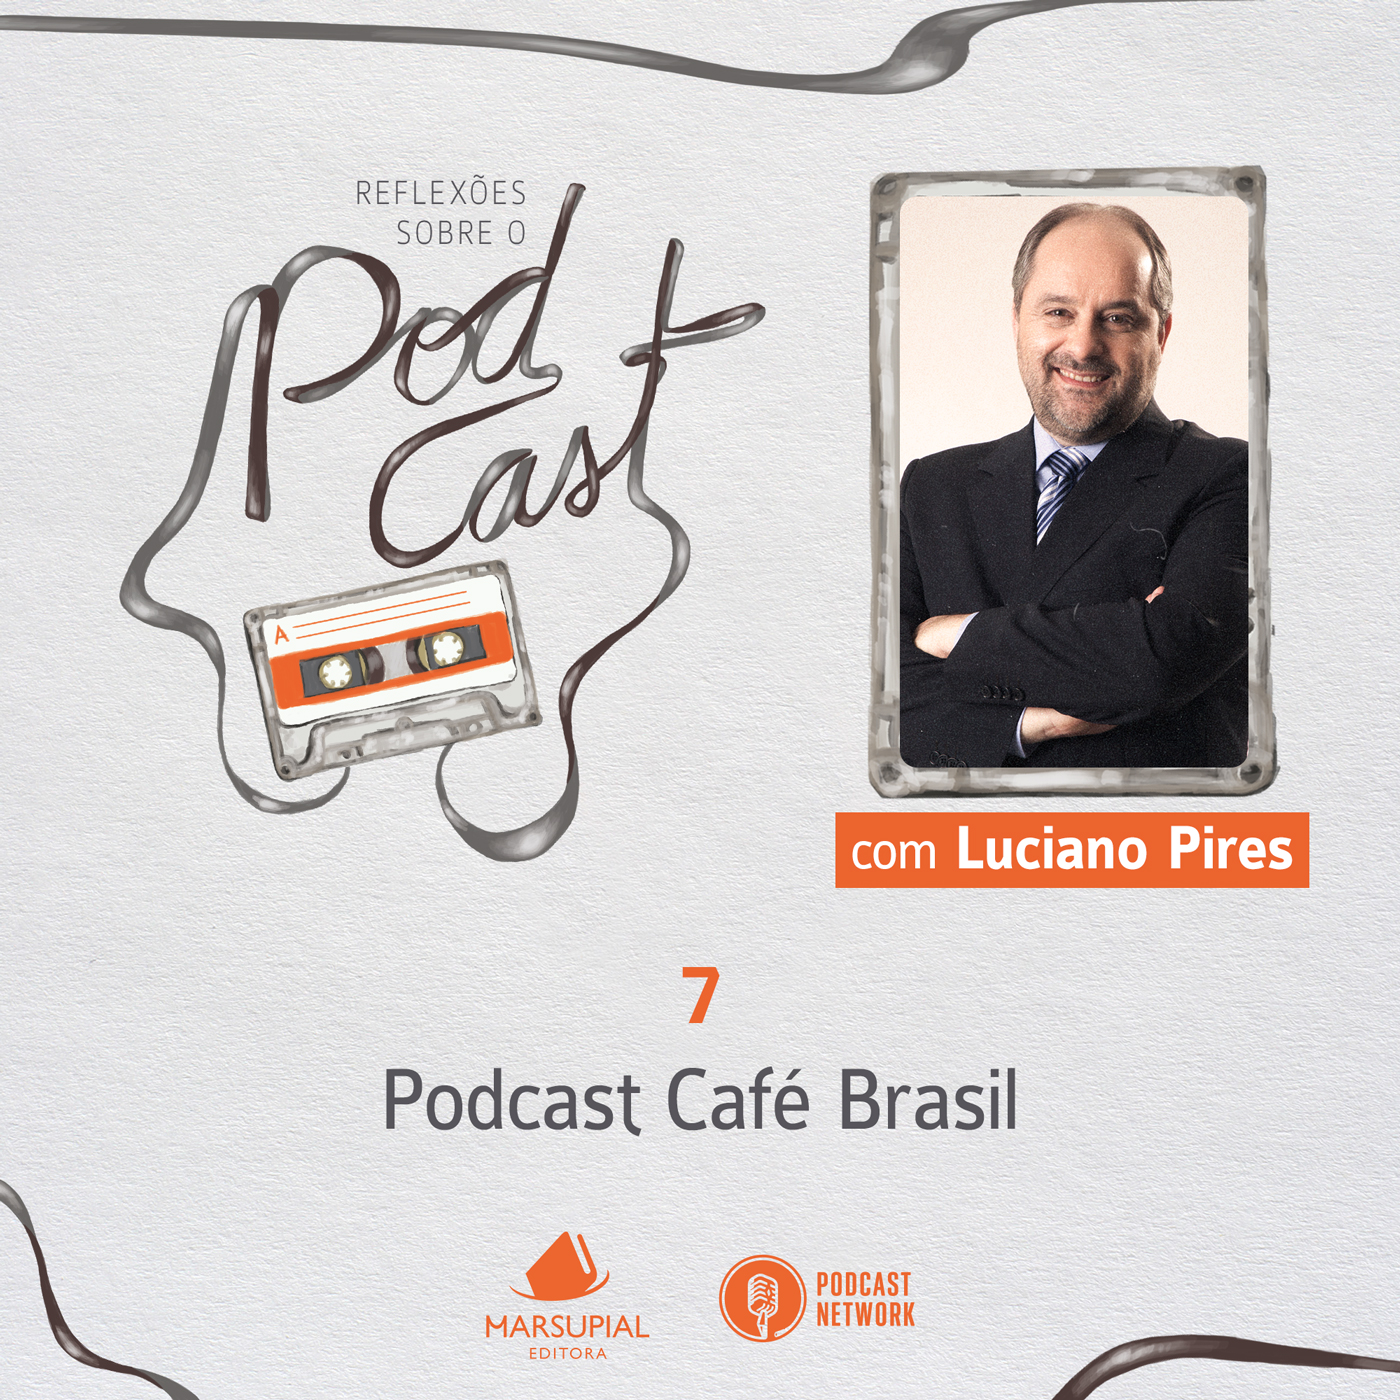 Reflexões sobre o Podcast - 07 - Podcast Café Brasil, por Luciano Pires